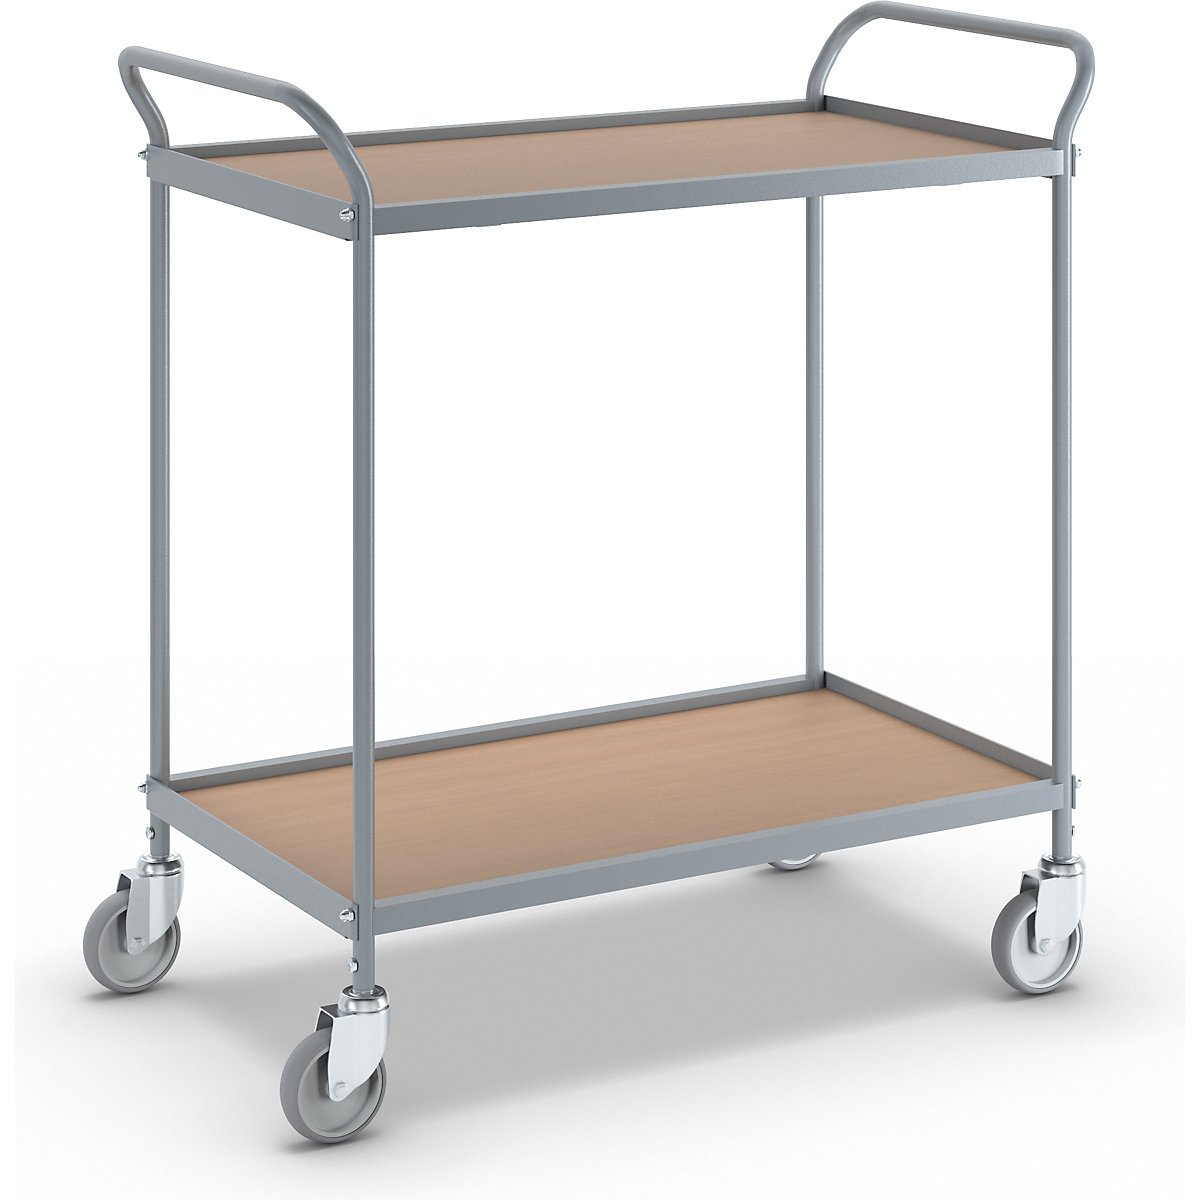 Serving trolley – eurokraft pro, shelf height 590 mm, 2 shelves, with 4 swivel castors, wheel Ø 100 mm-1